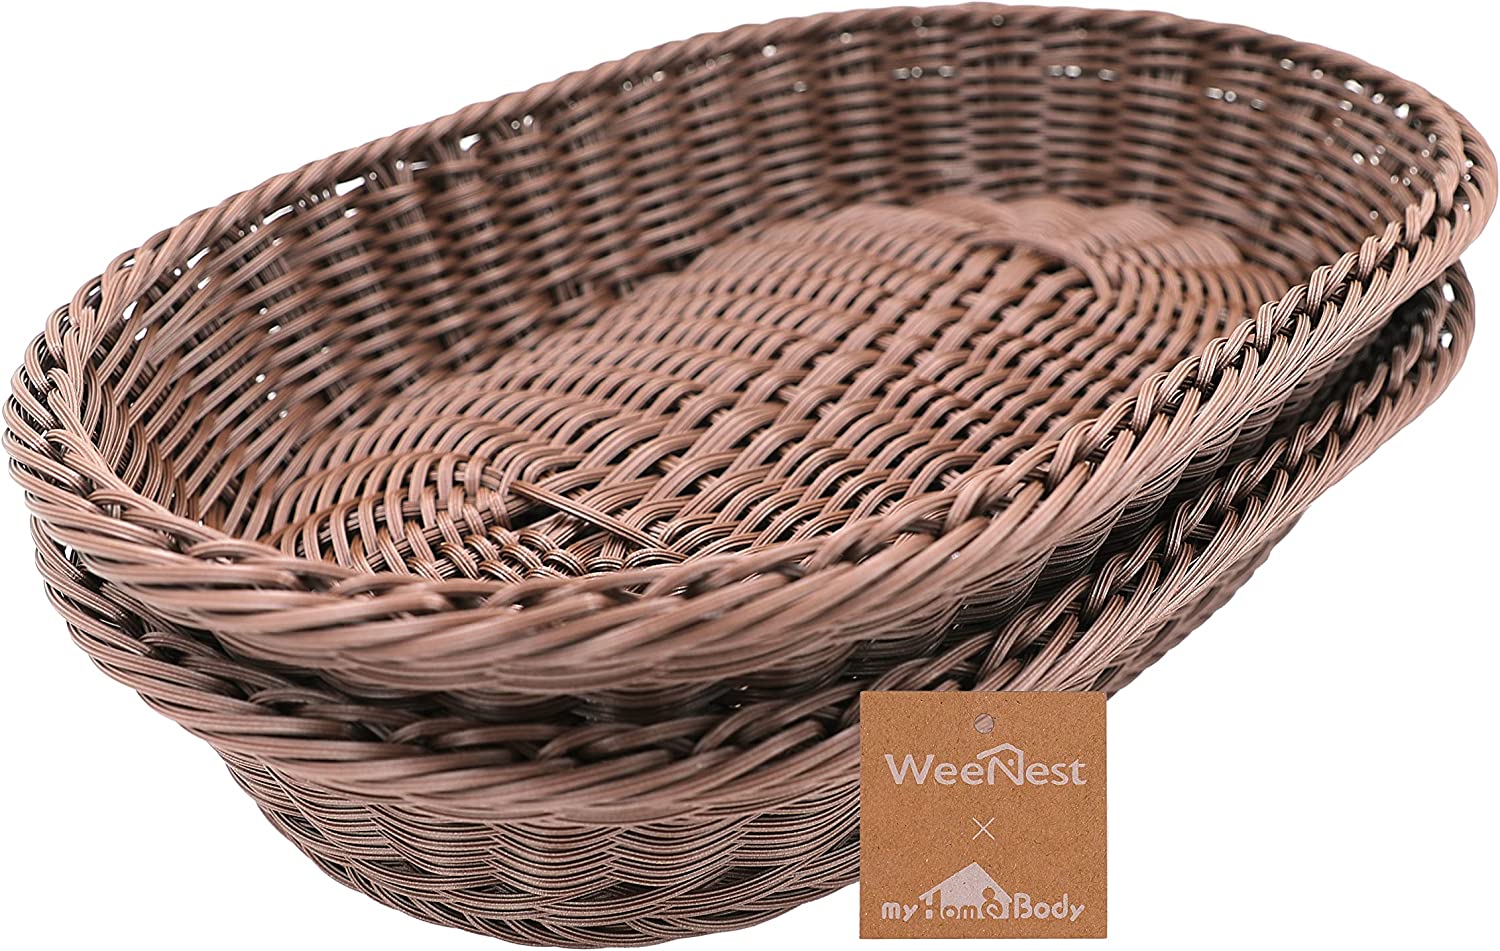 Oval Wicker Storage Basket